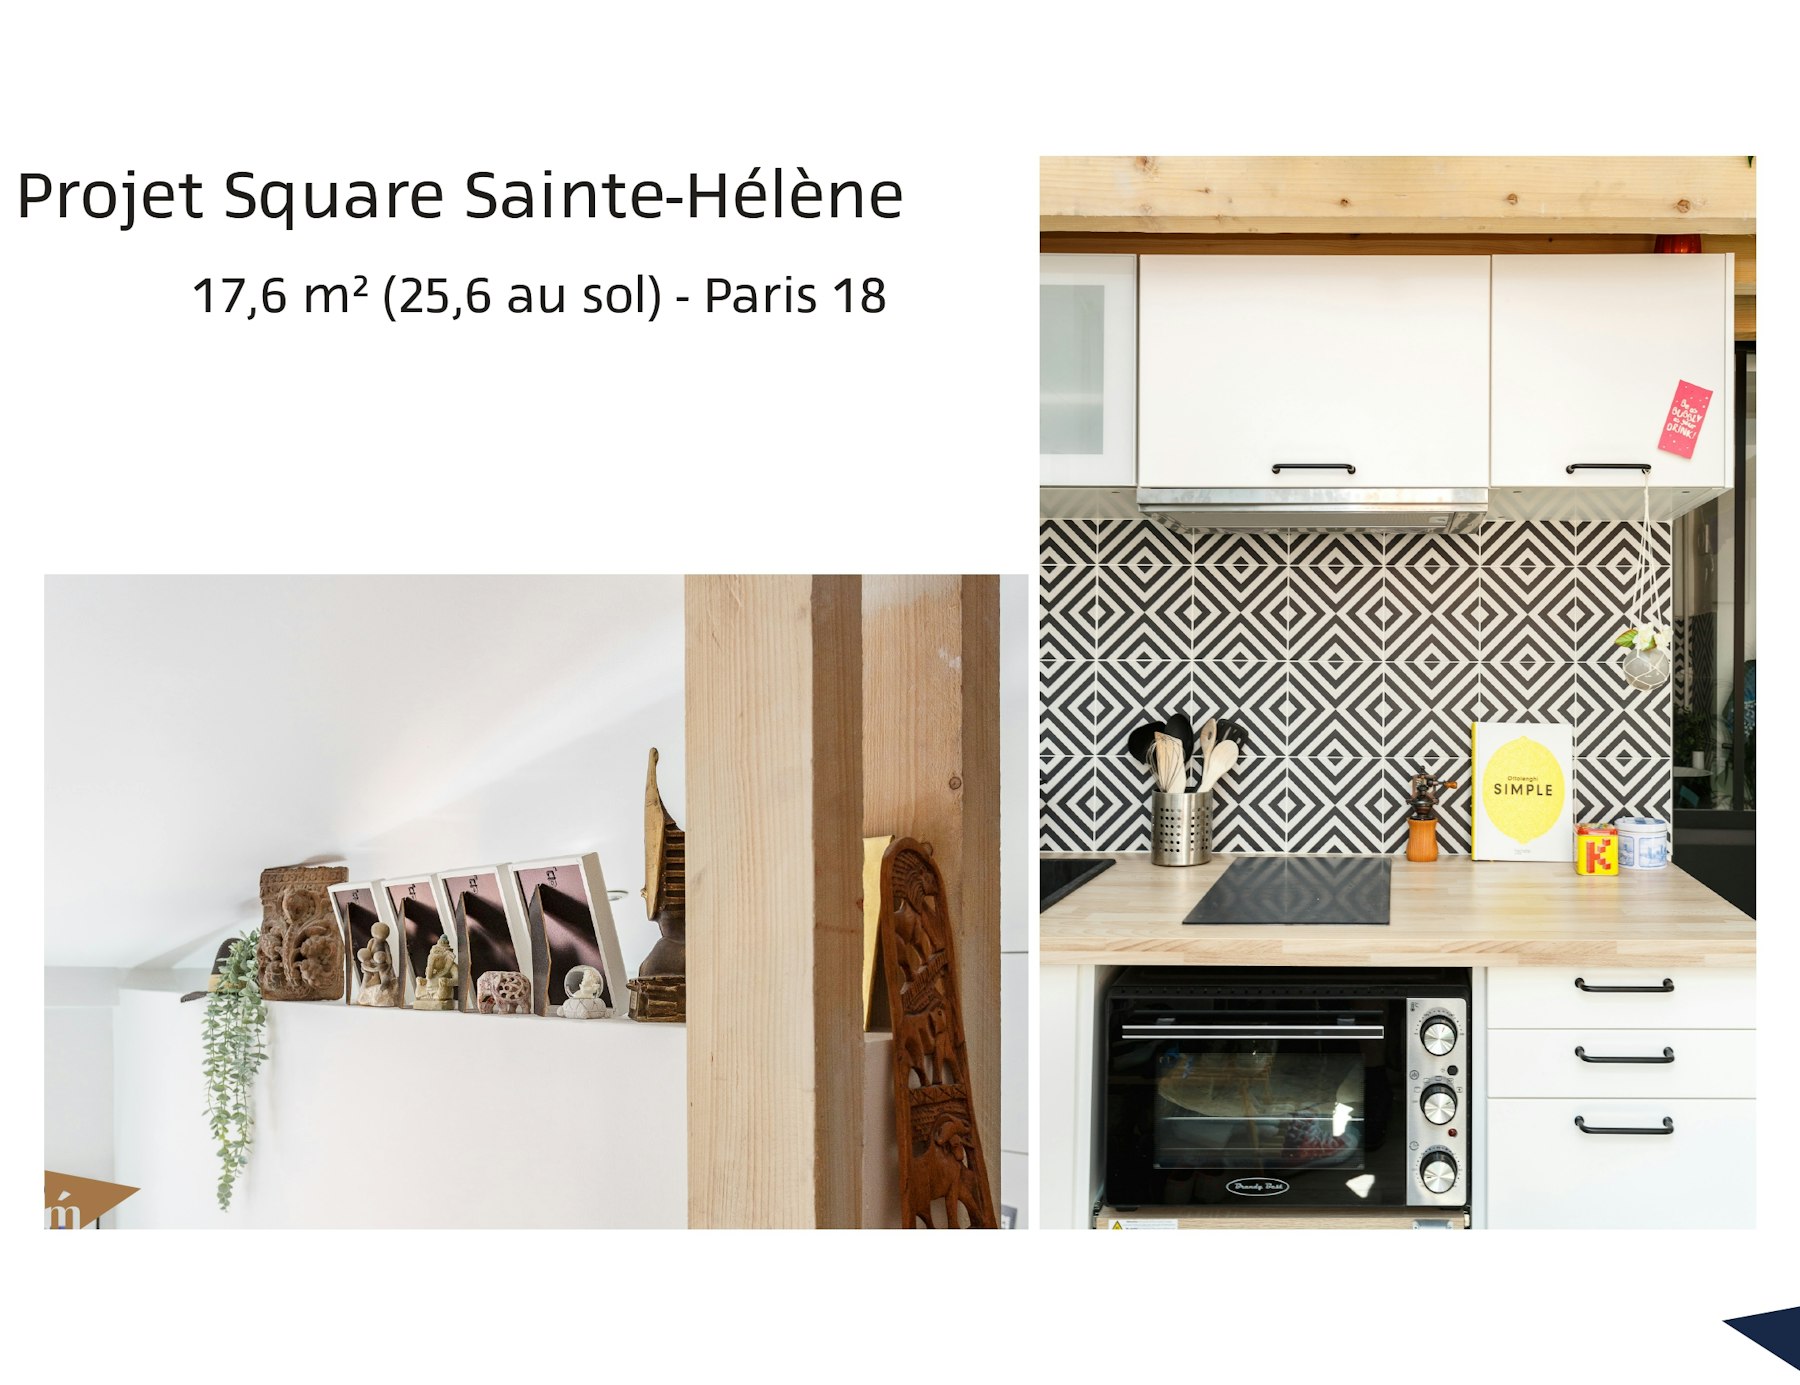 photo Projet Square Sainte-Hélène - 17m² (25,6m² au sol) - Paris 18 Léa Mast - Architecte hemea